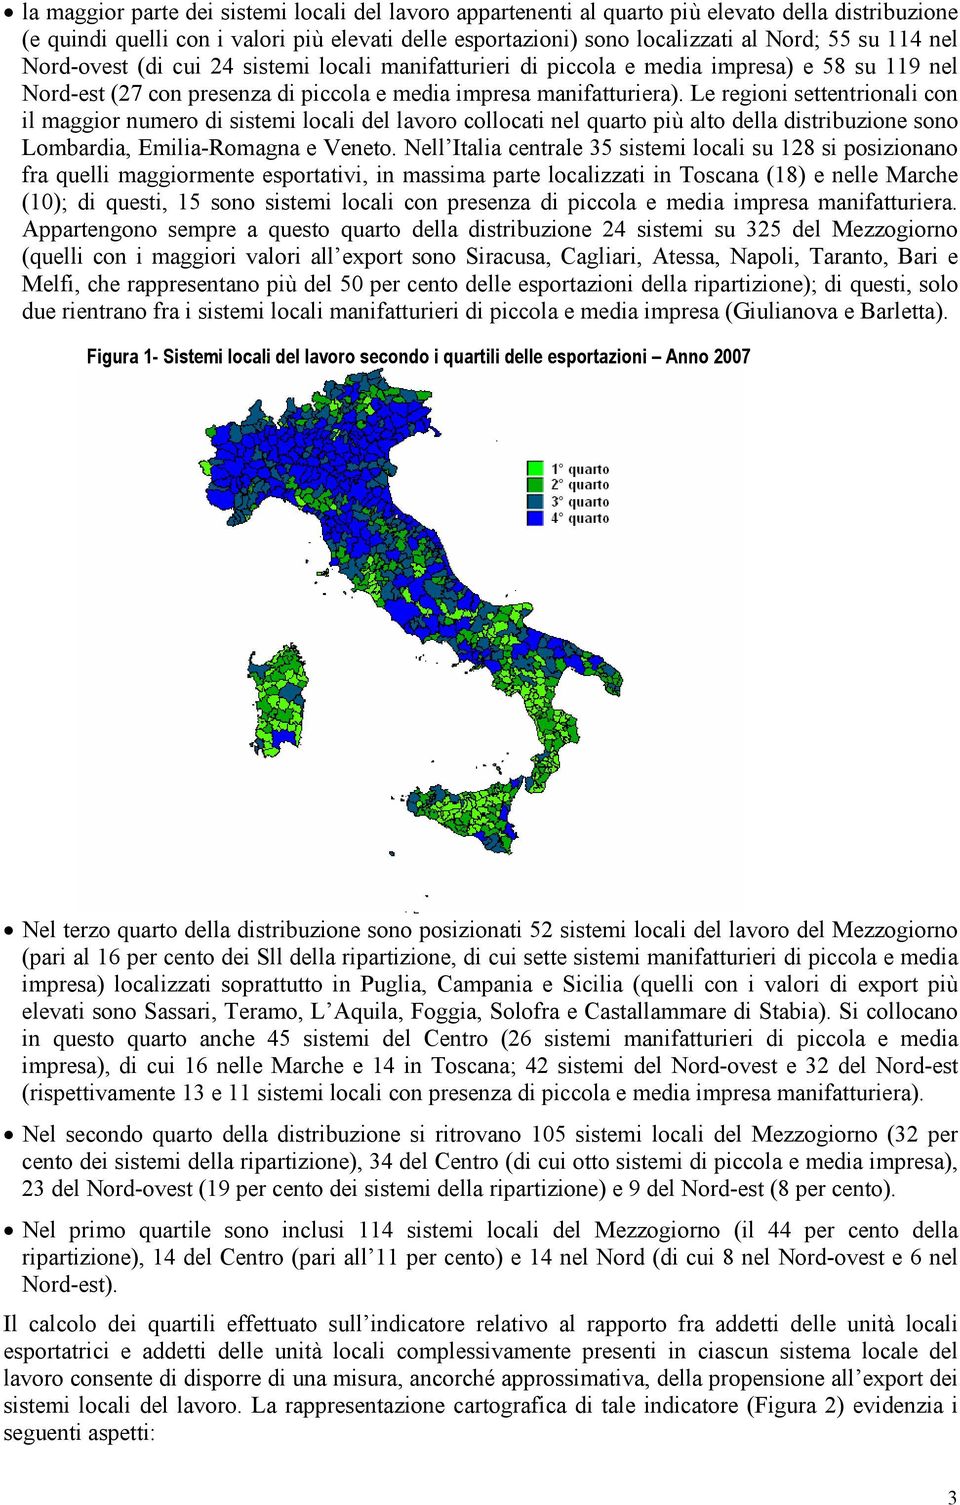 Le regioni settentrionali con il maggior numero di sistemi locali del lavoro collocati nel quarto più alto della distribuzione sono Lombardia, Emilia-Romagna e Veneto.